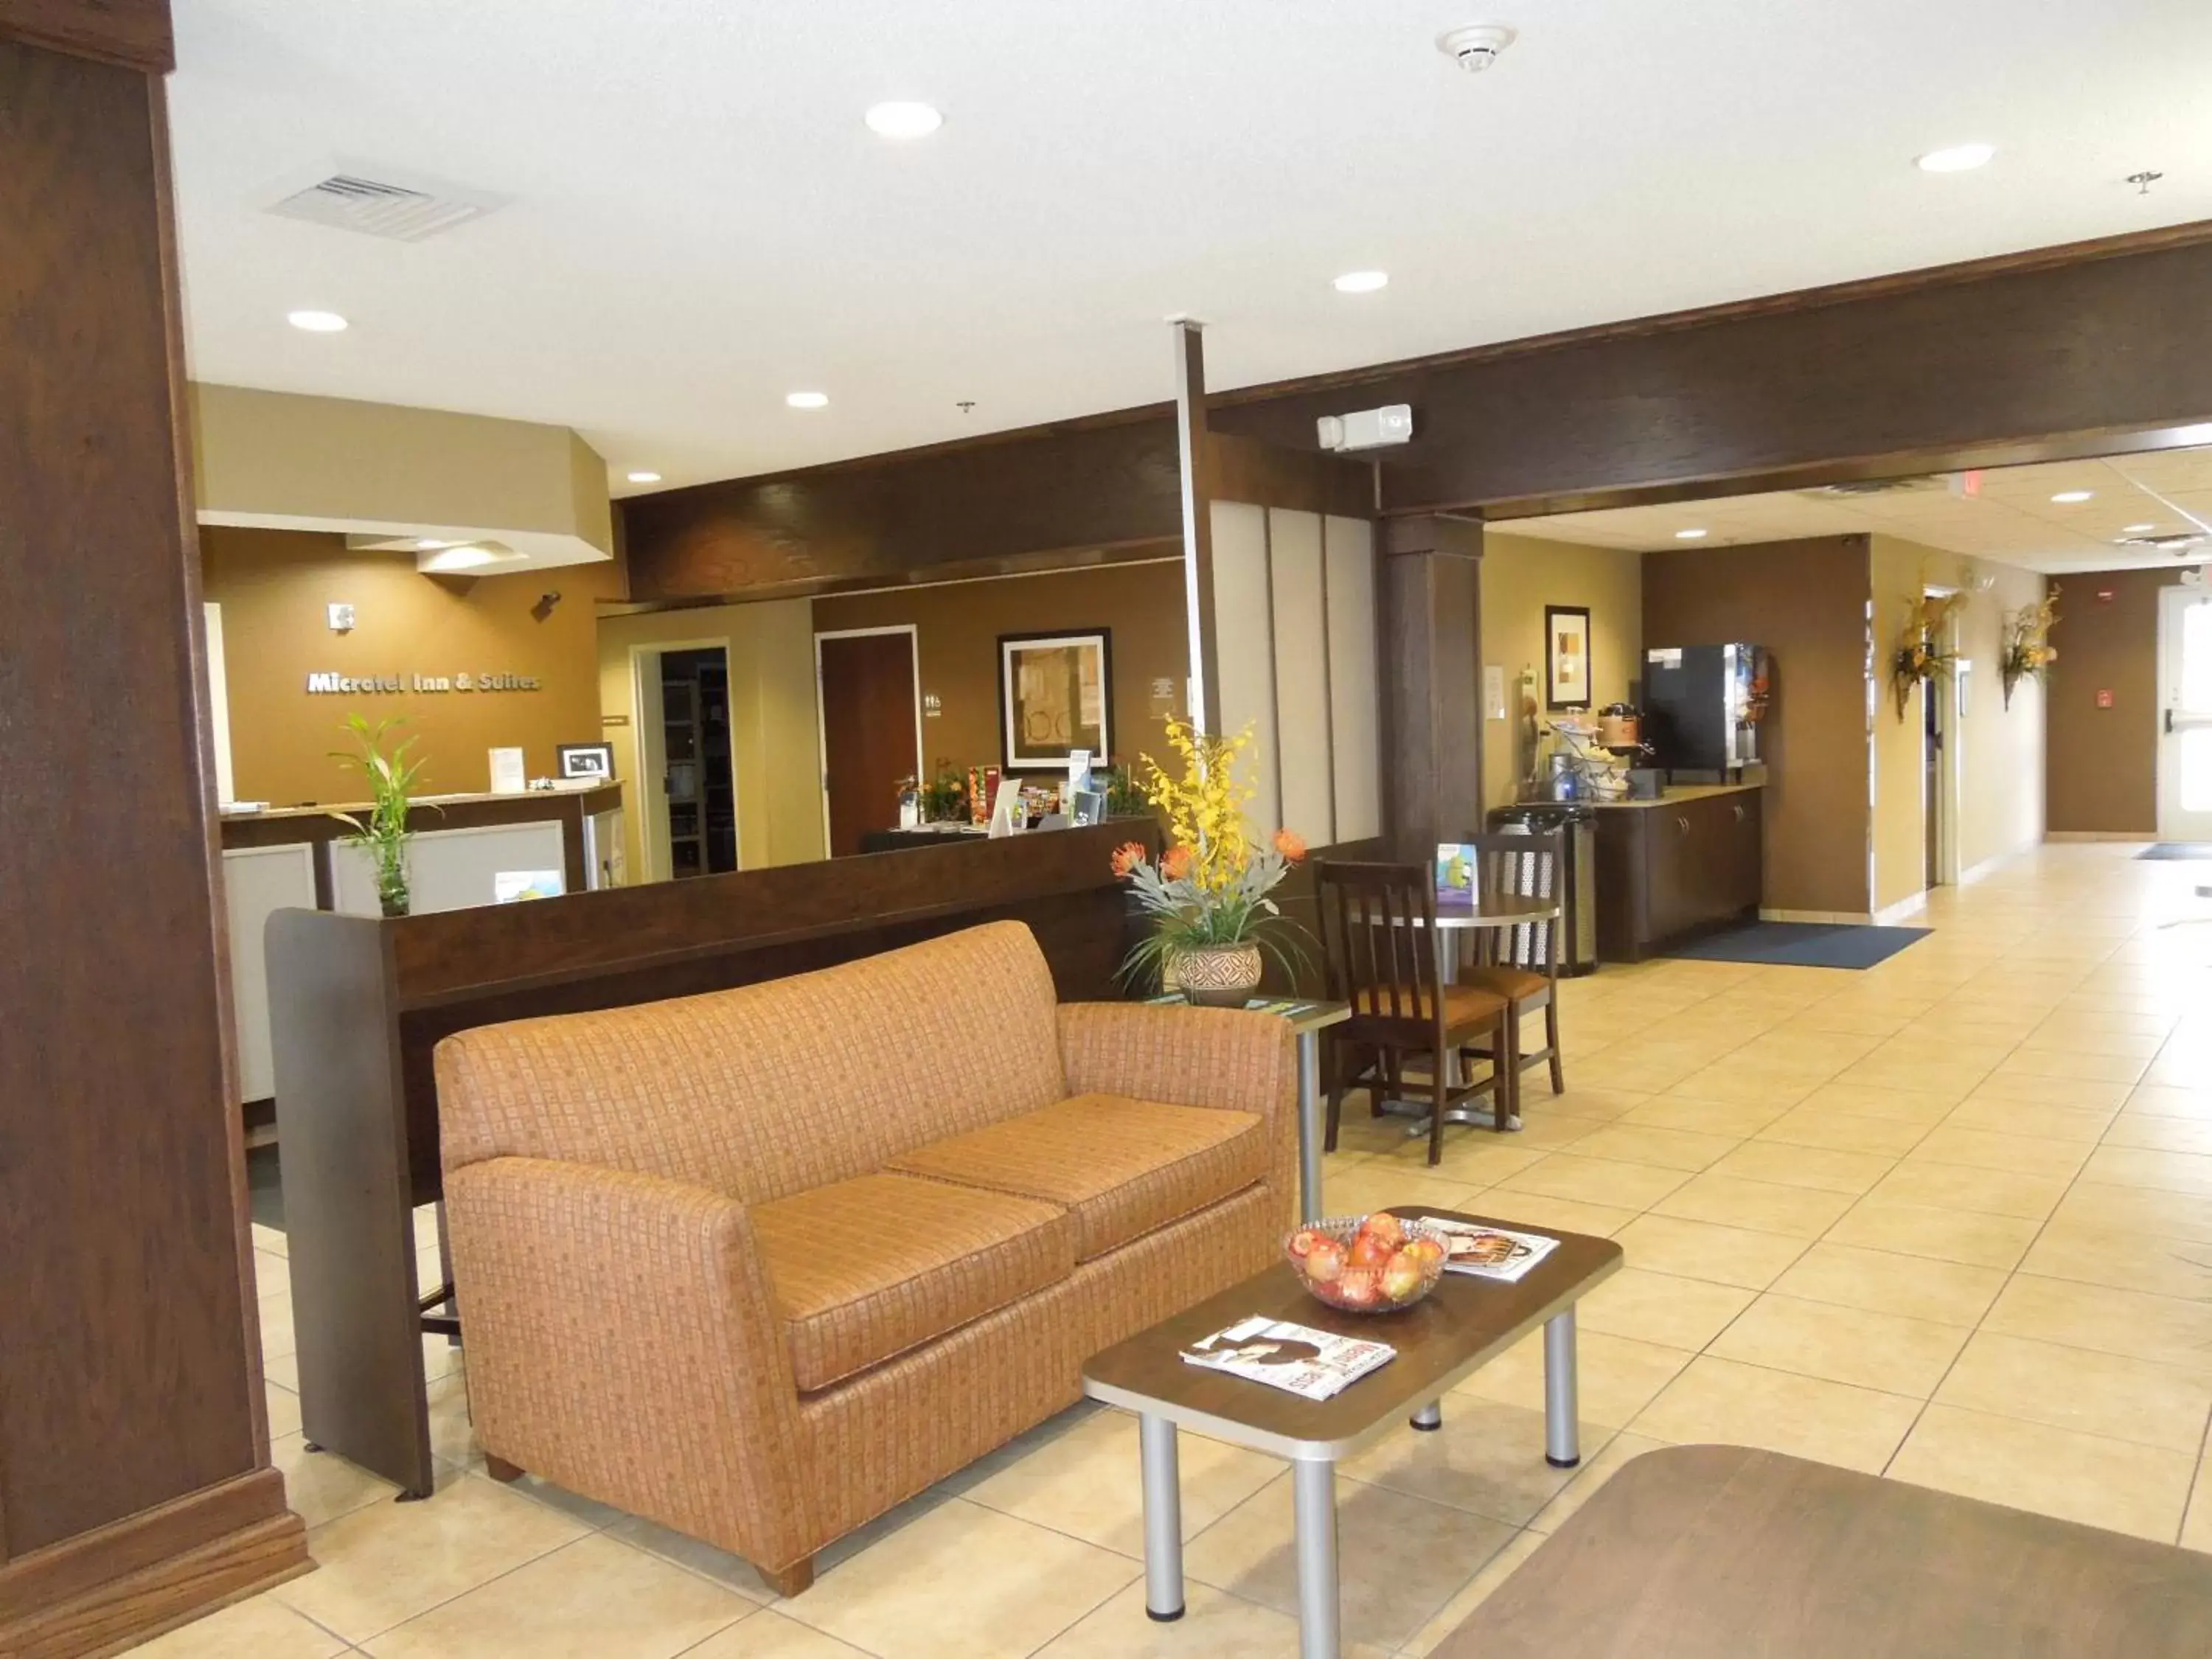 Lobby or reception, Lobby/Reception in Microtel Inn & Suites by Wyndham Harrisonburg